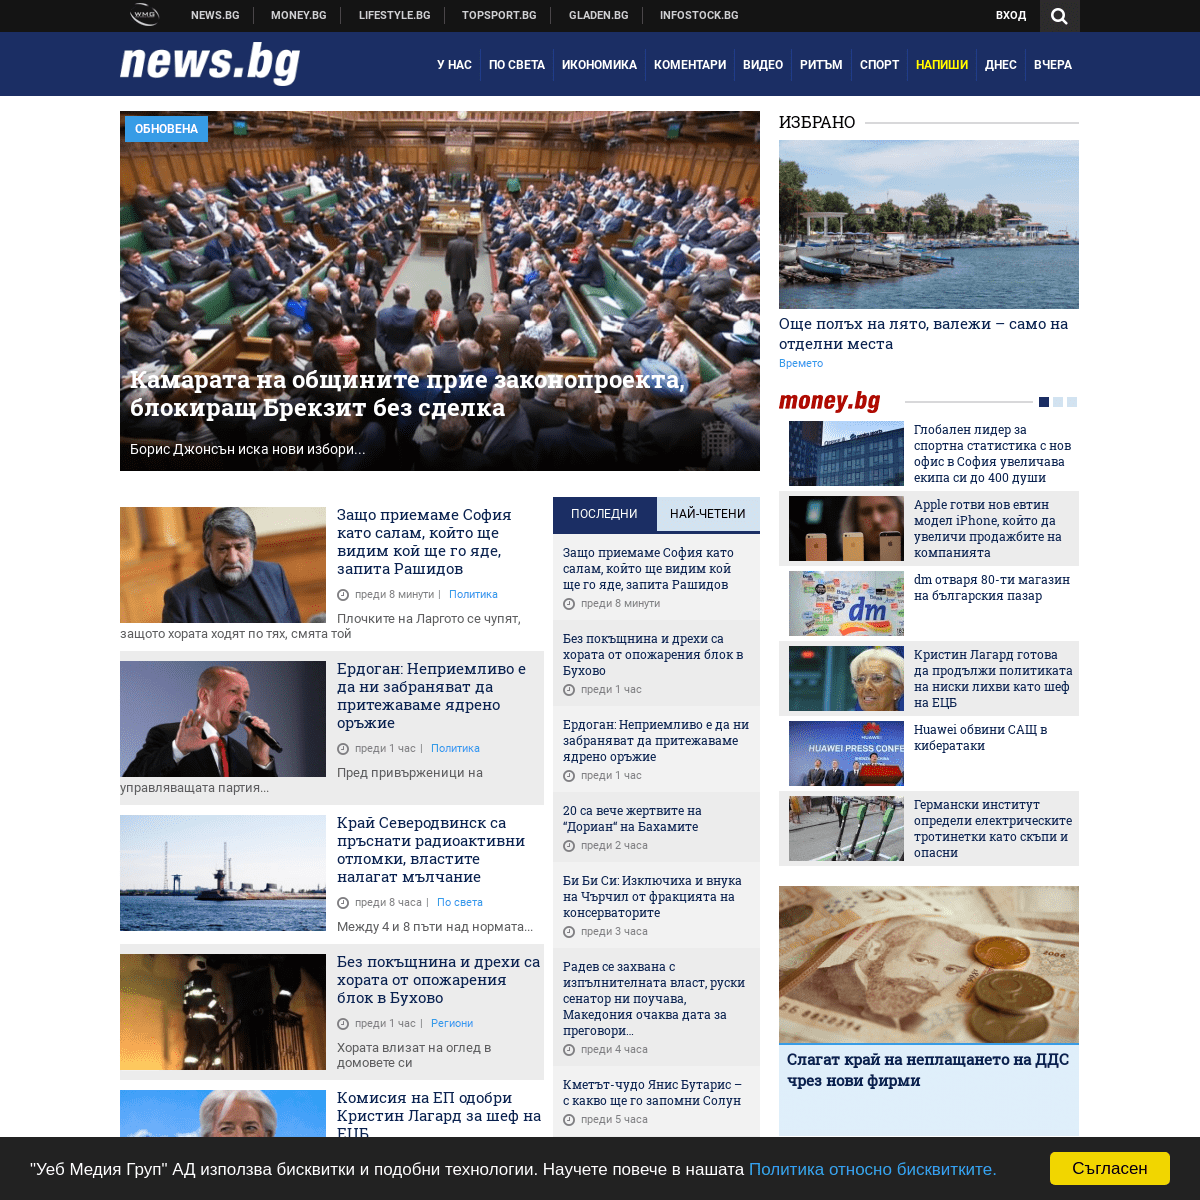 Новини от България и света, актуална информация 24 часа в денонощието - News.bg